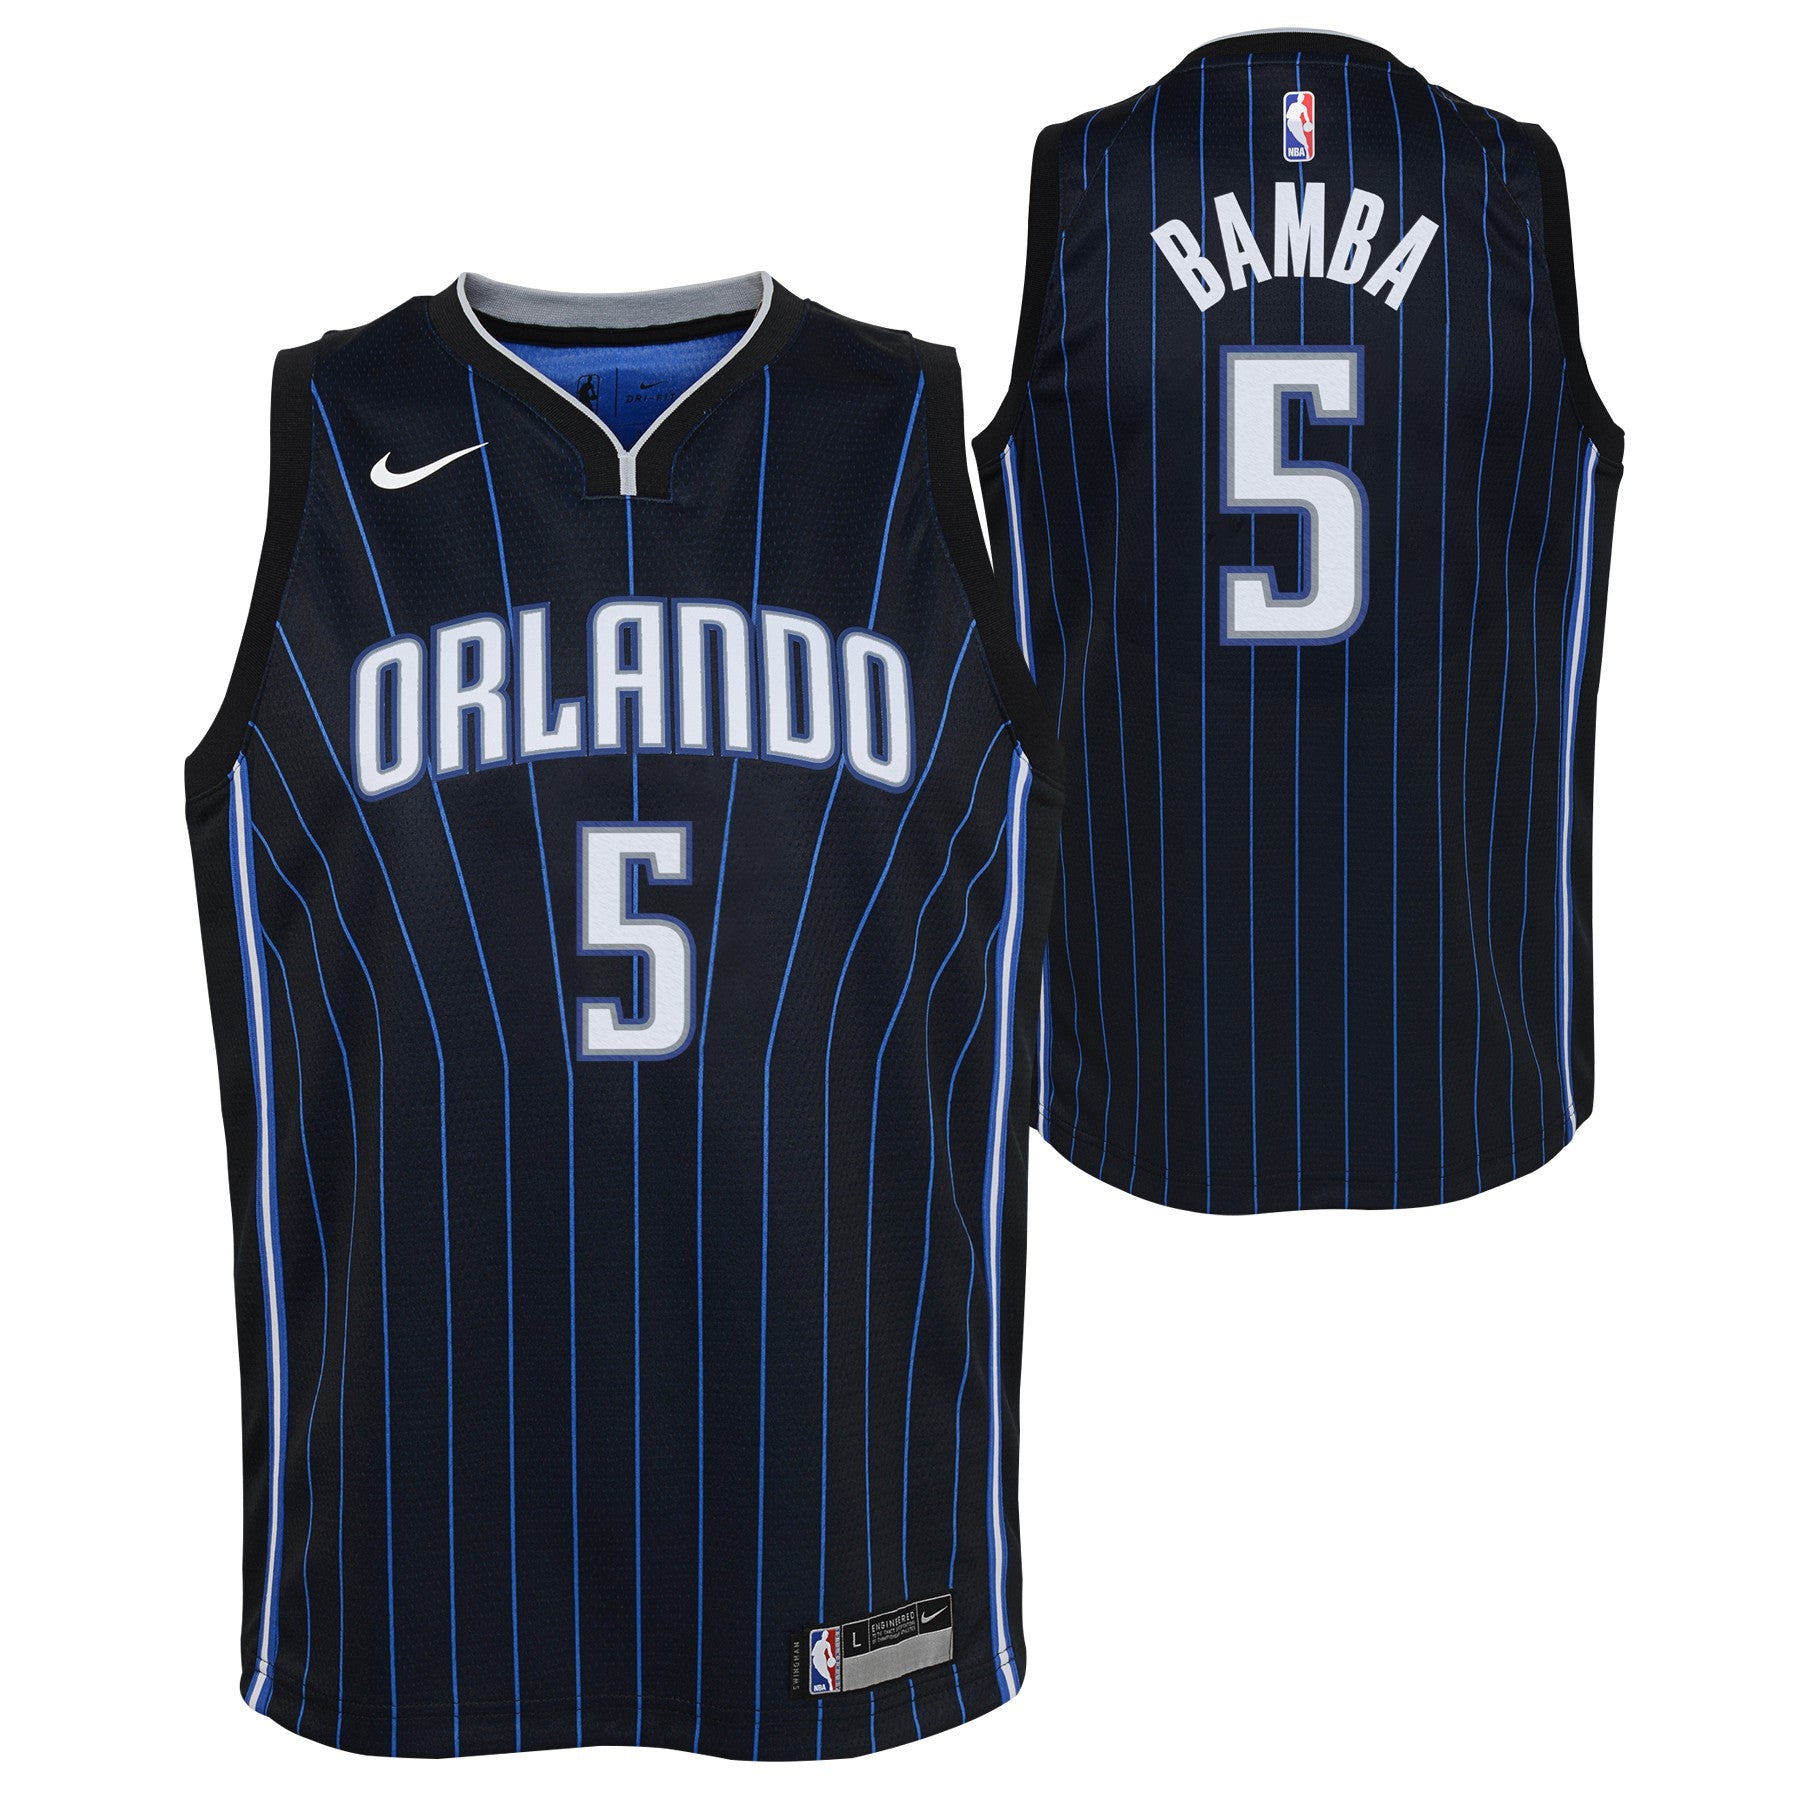 Orlando Magic NBA Fan Shorts for sale